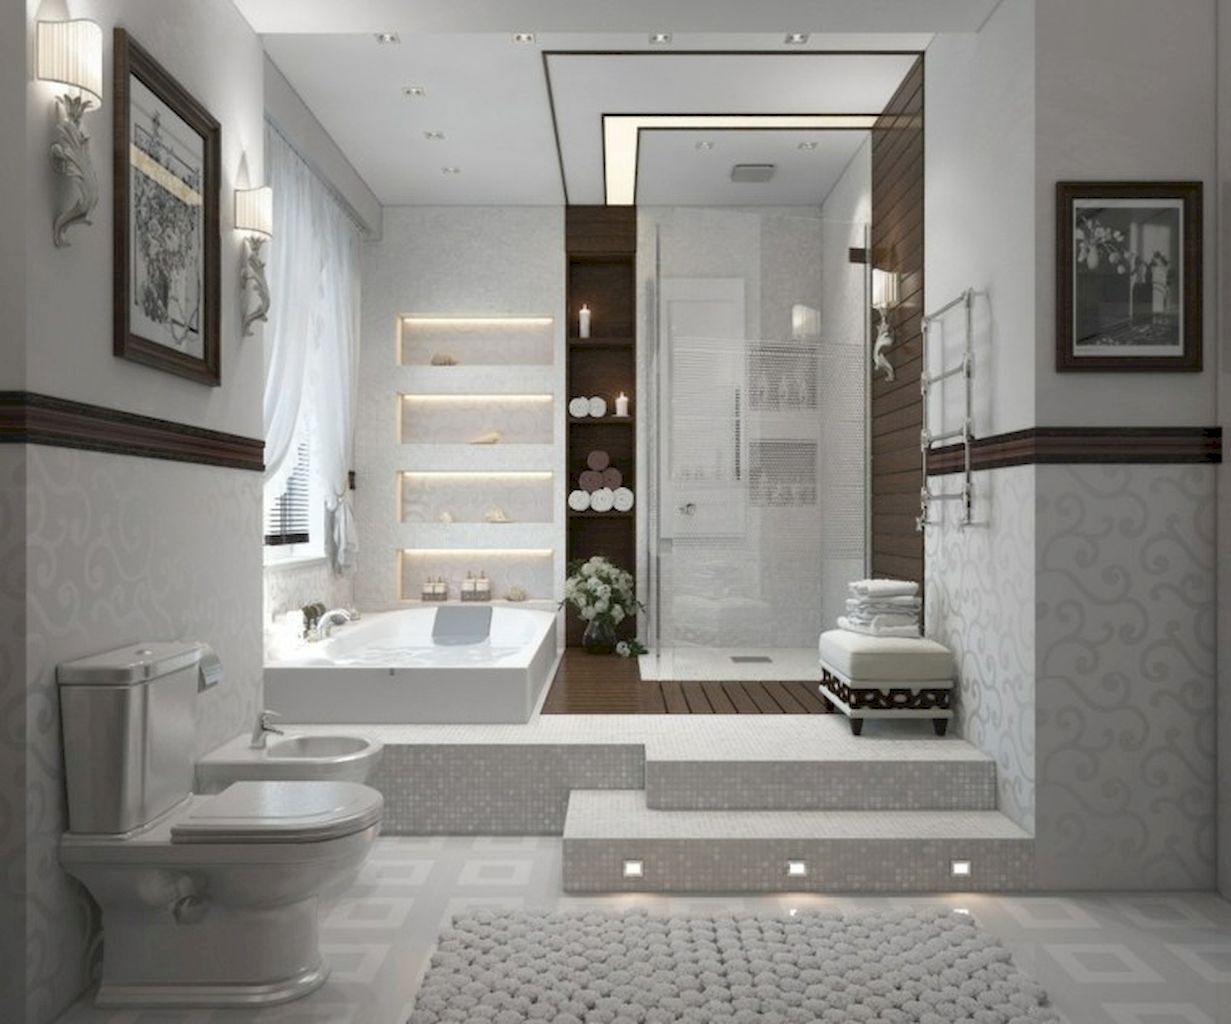 Lovely Modern Farmhouse Design For Bathroom Remodel Ideas 44